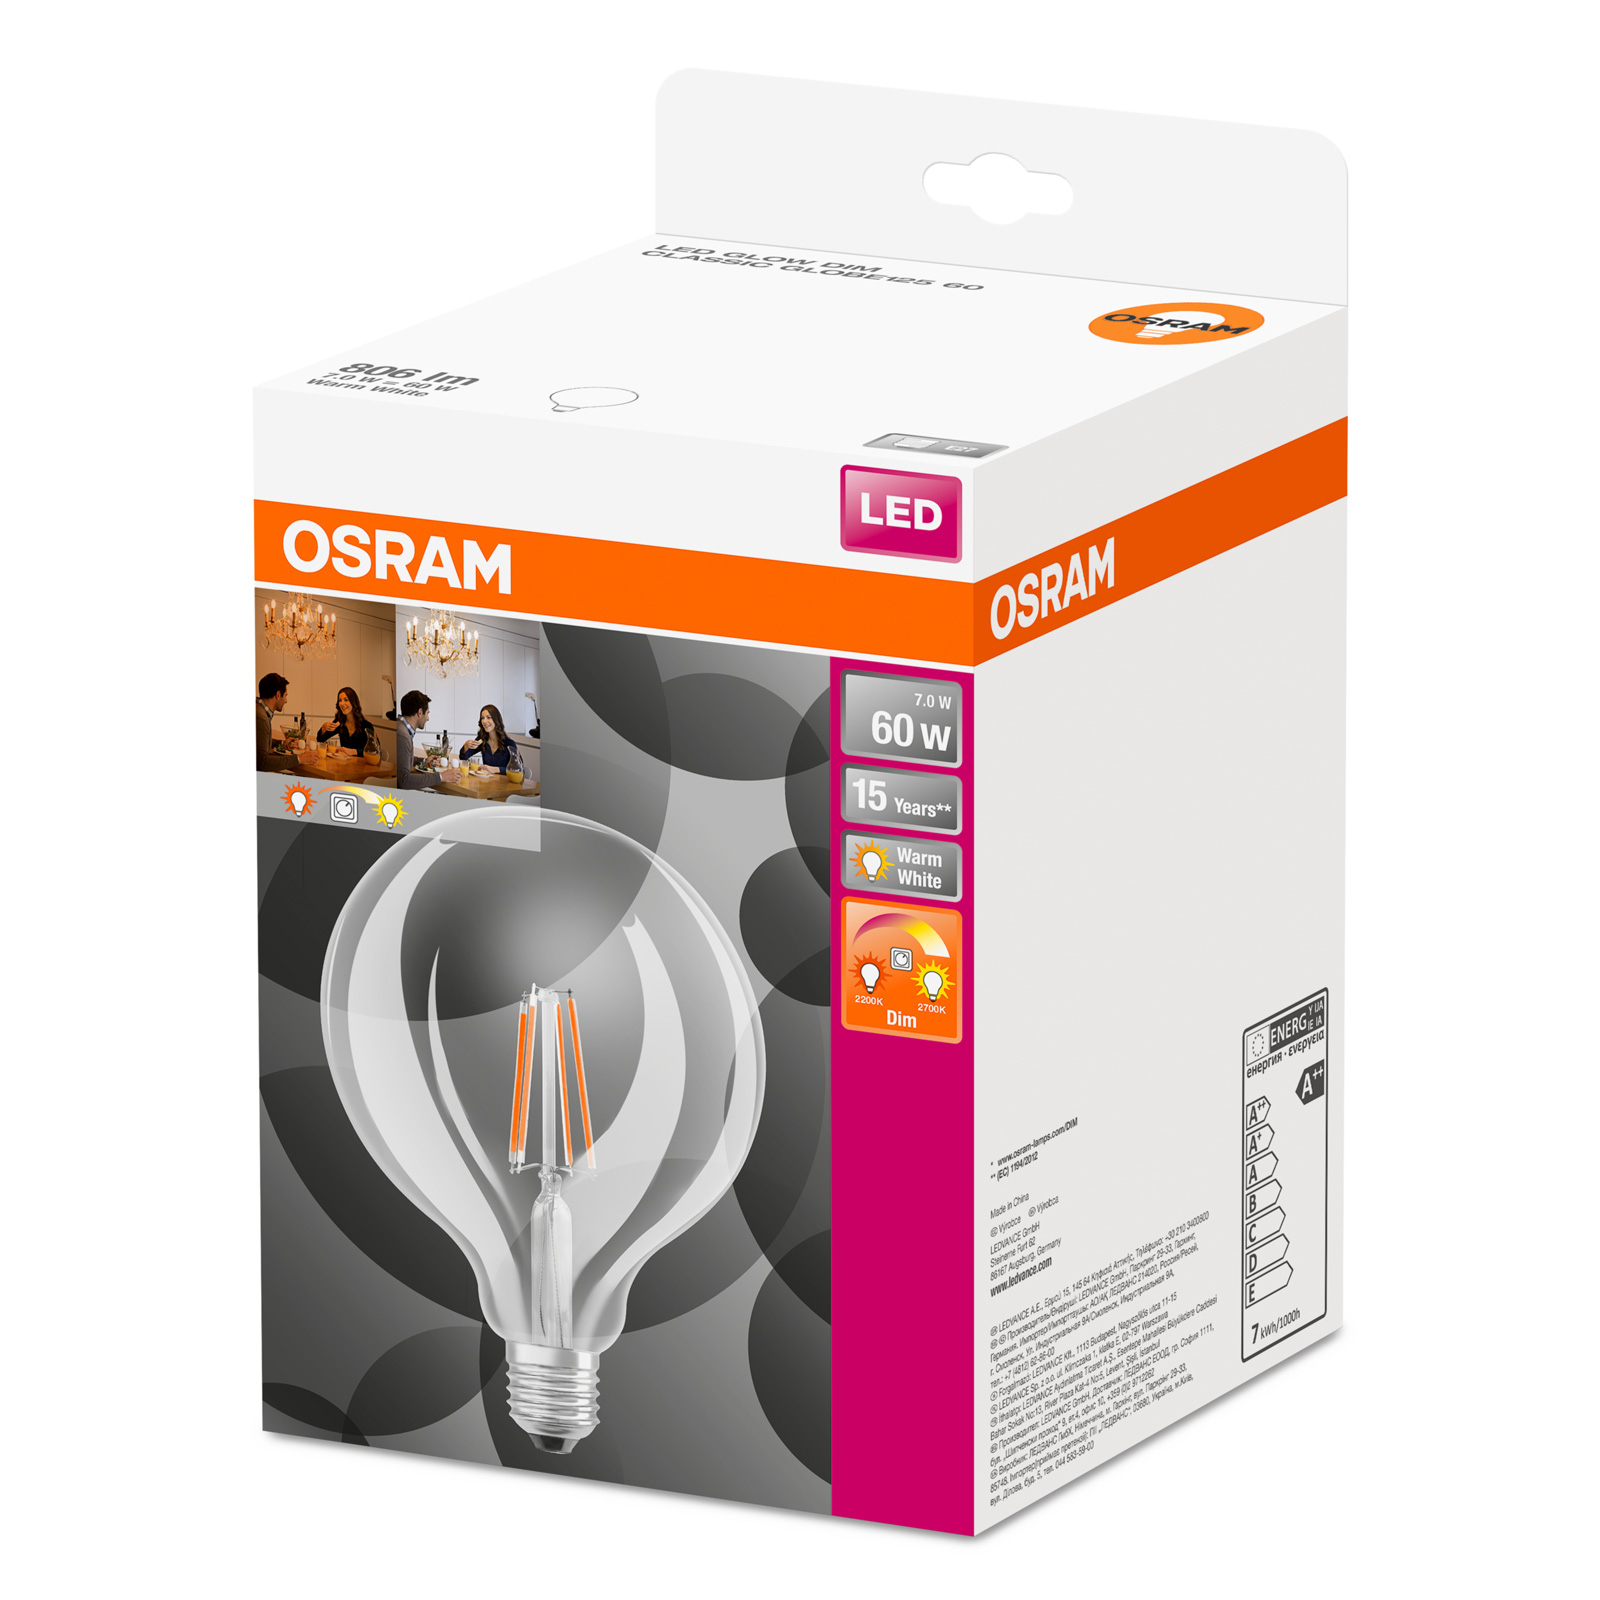 Gedachte Bezet Scharnier OSRAM LED bollamp E27 6,5W G125 827 Glow dim | Lampen24.nl